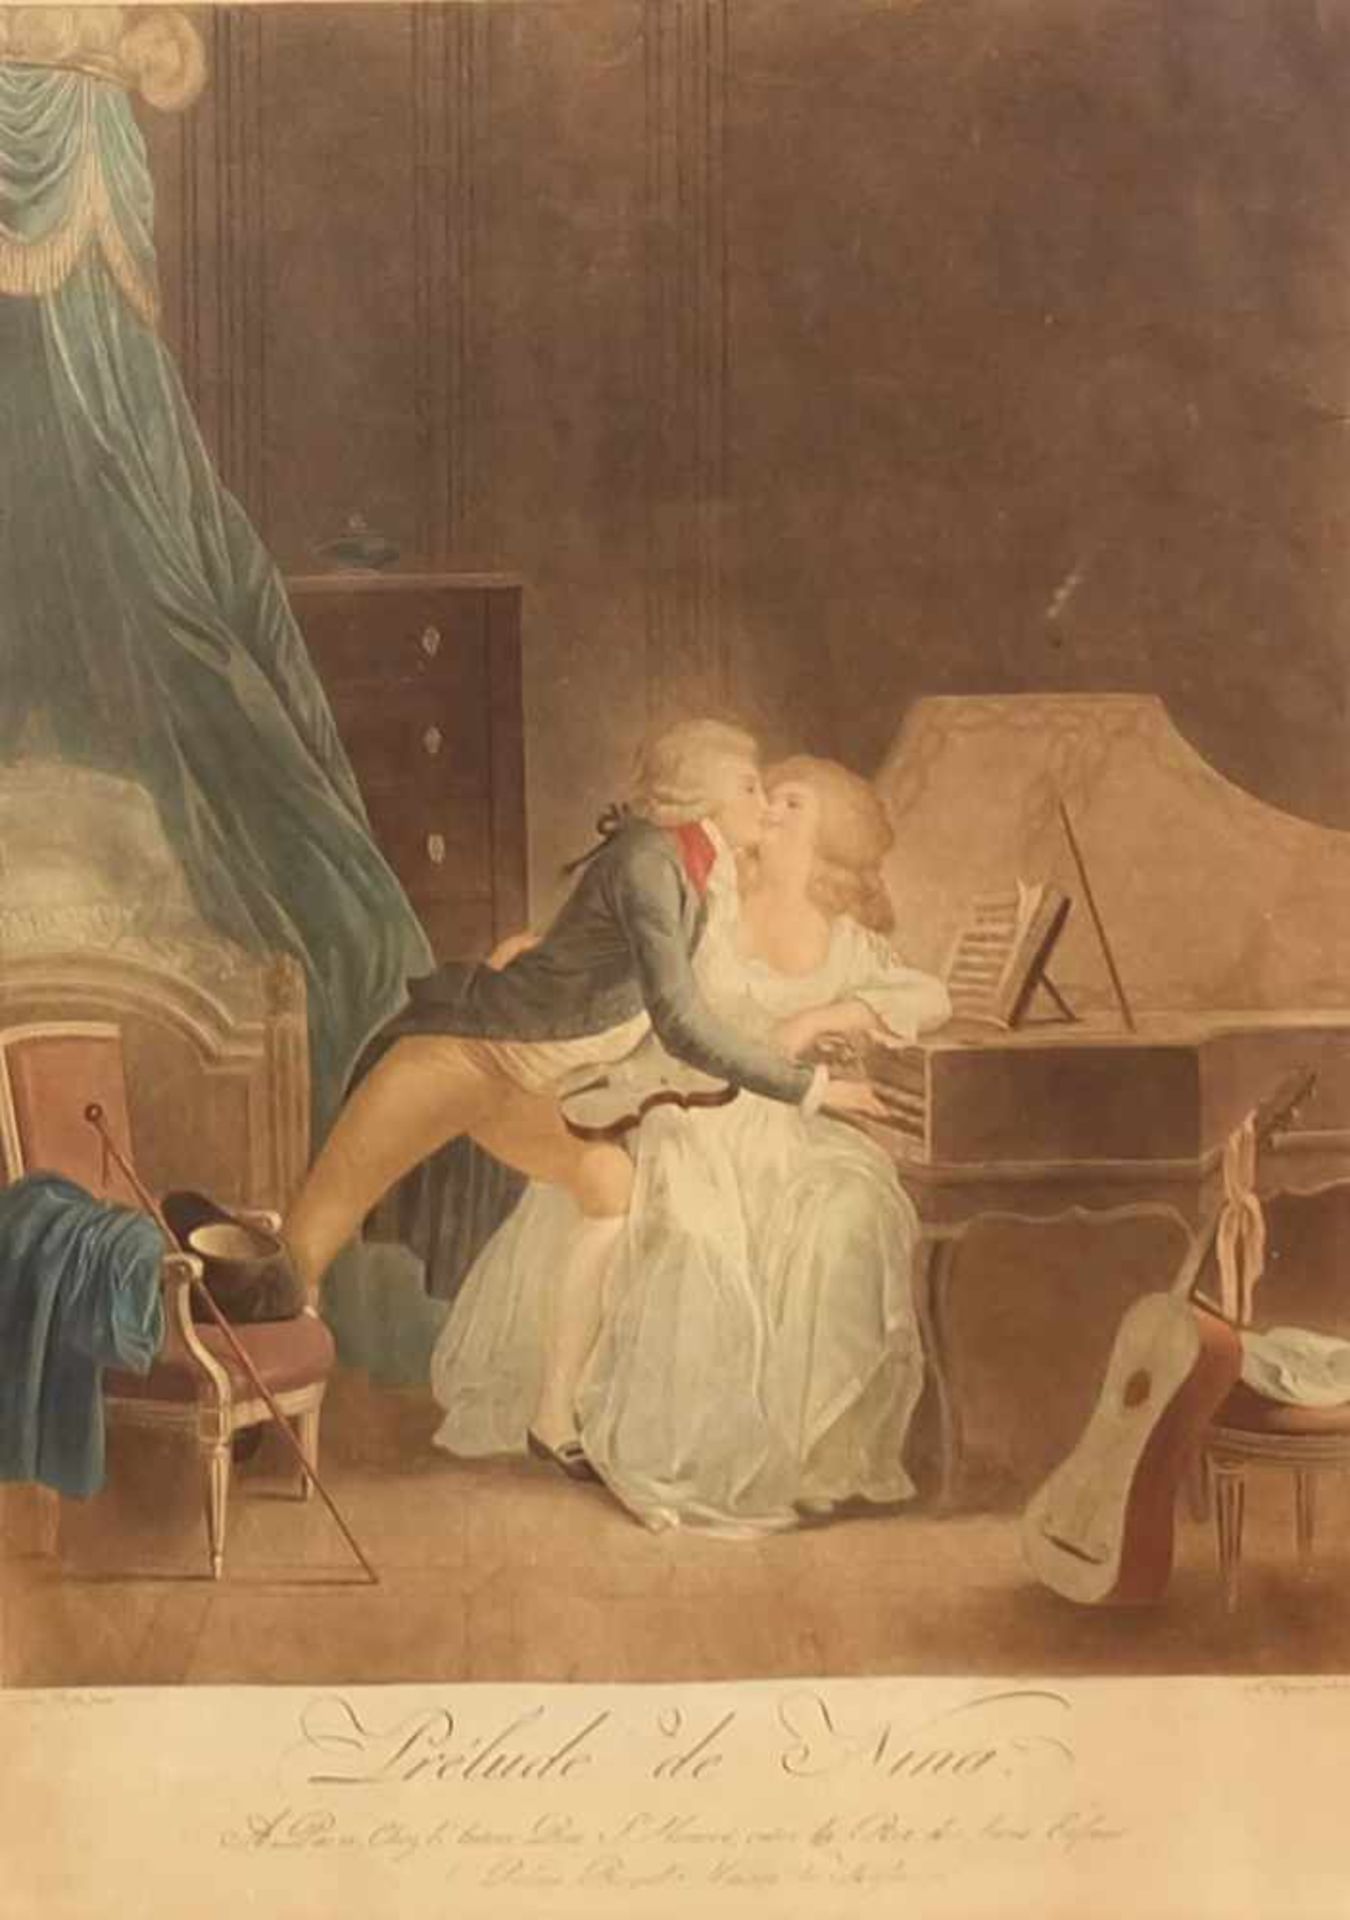 CHAPONNNIER, Alexandre (*1753 +1805), colorierter Kupferstich, "Prelude de Nina", unten bez. und